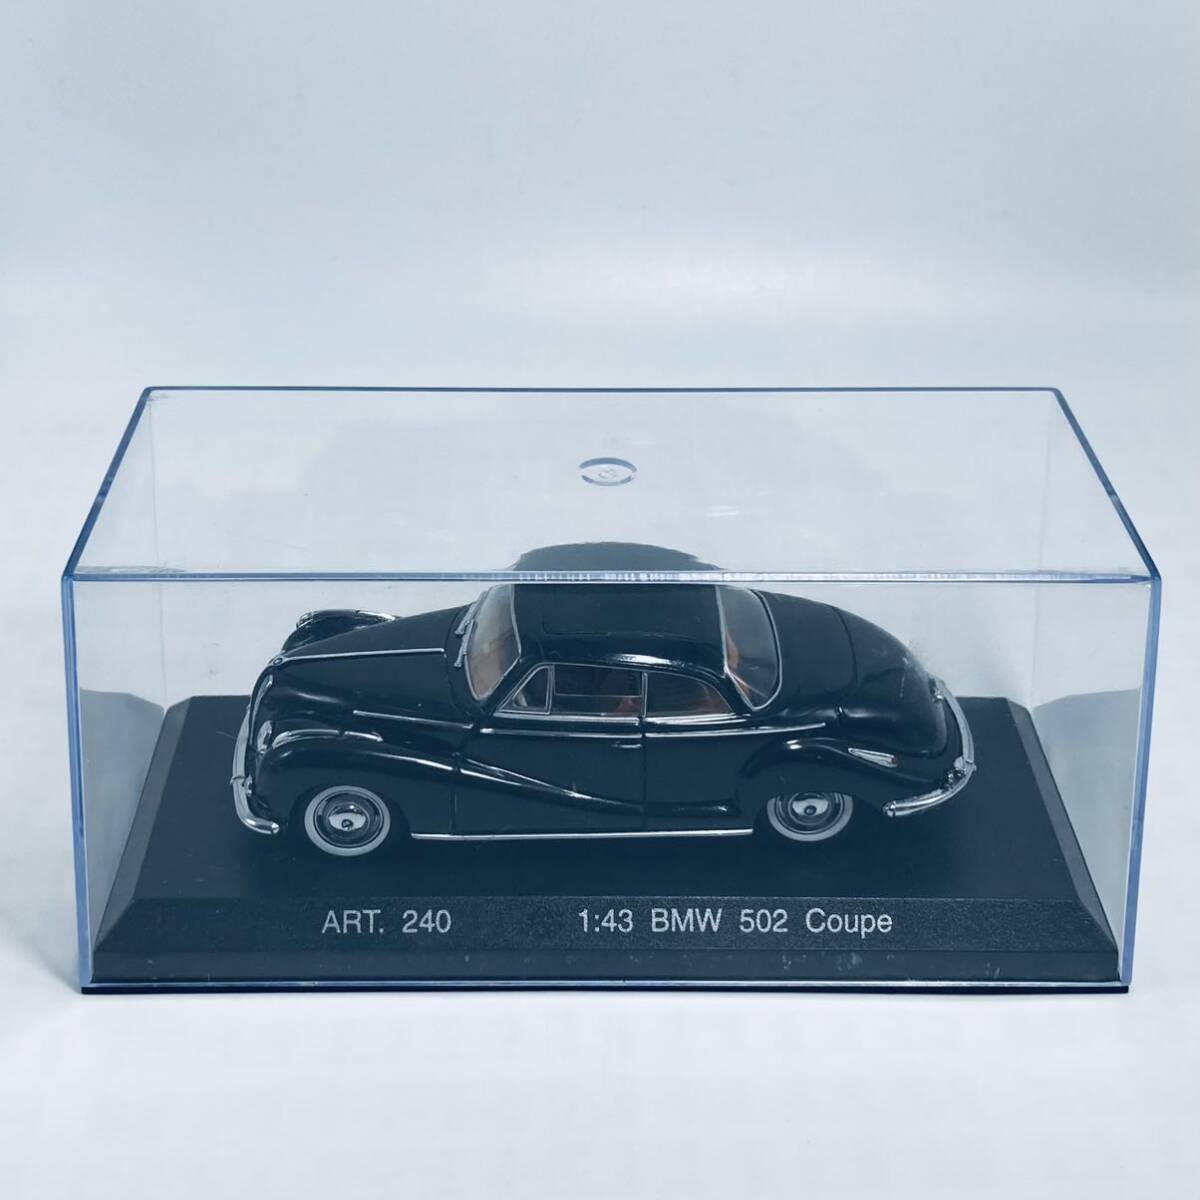  вне без коробки .C.D.C Detail Cars 1/43 BMW 502 Coupe BLACK